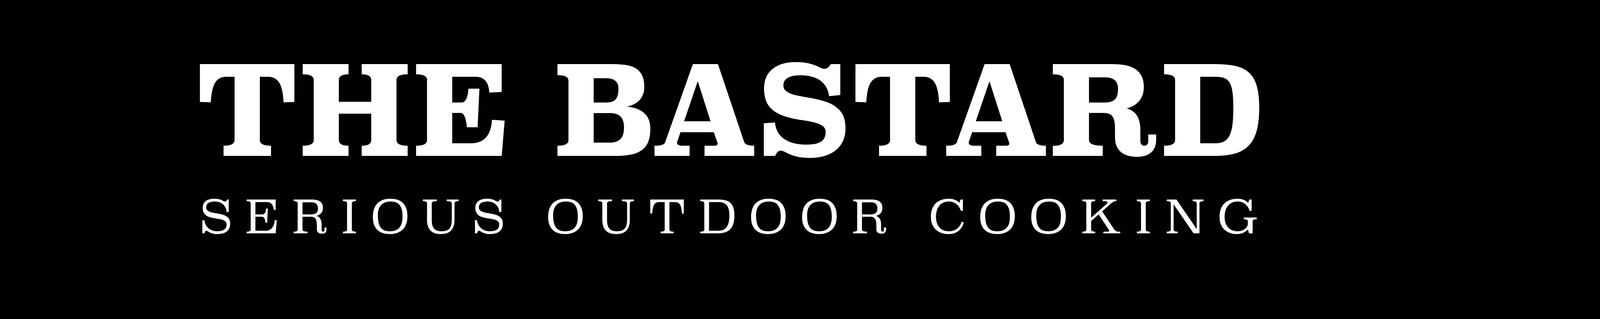 The Bastard - Easy Rostheber